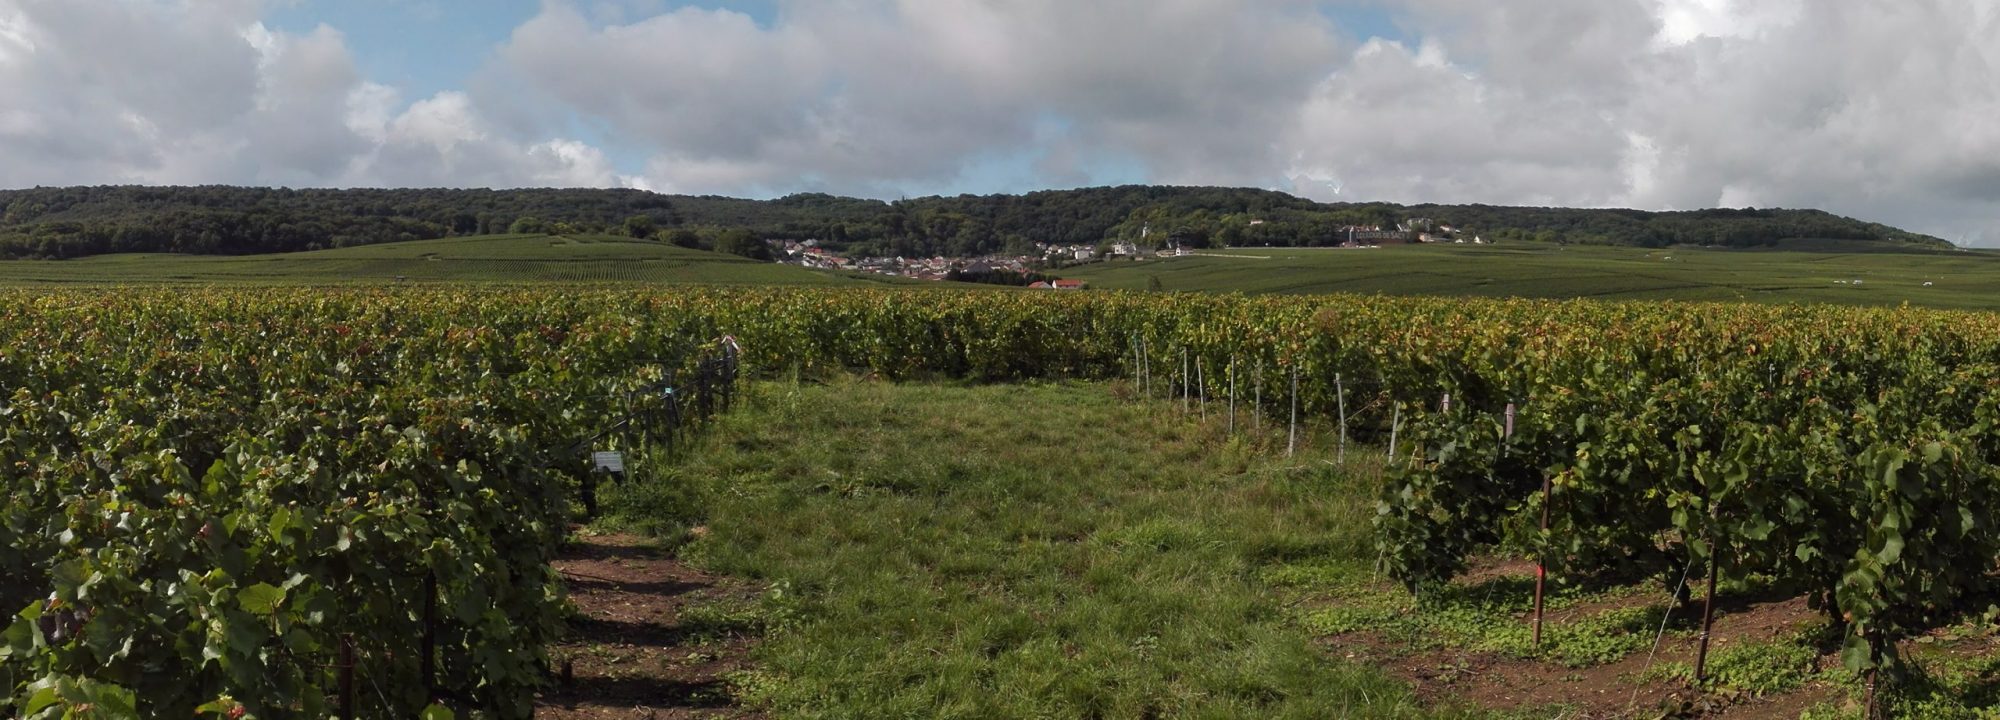 Notre Vignoble - Une viticulture respectueuse du Terroir et de l'environnement,<br />au cœur d'un vignoble d'exception